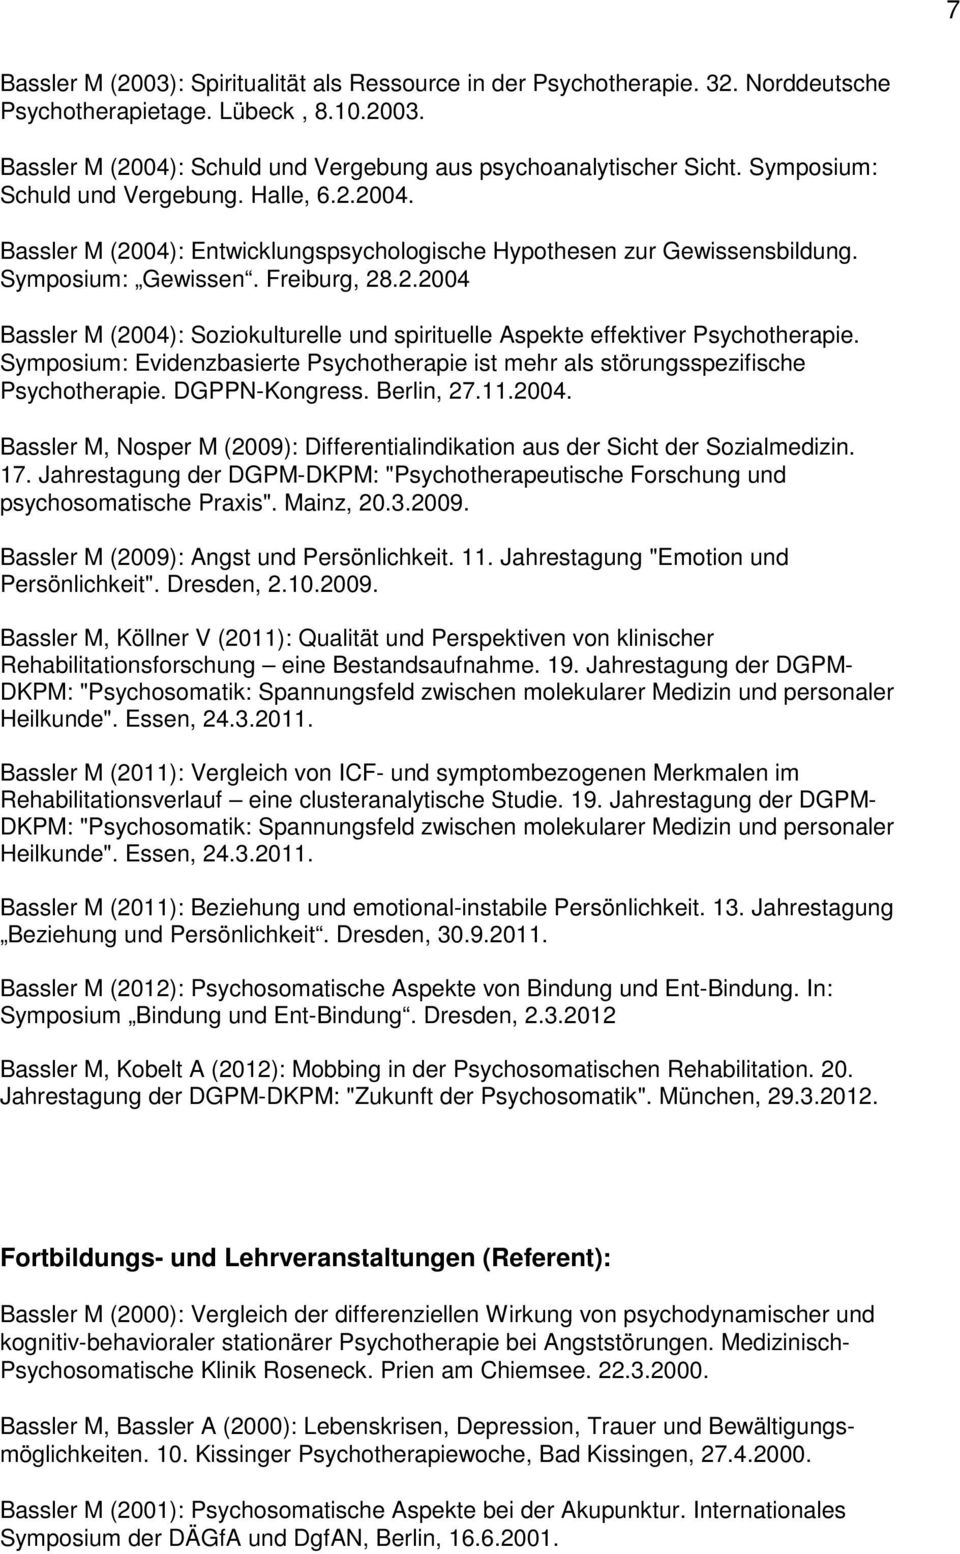 Symposium: Evidenzbasierte Psychotherapie ist mehr als störungsspezifische Psychotherapie. DGPPN-Kongress. Berlin, 27.11.2004.